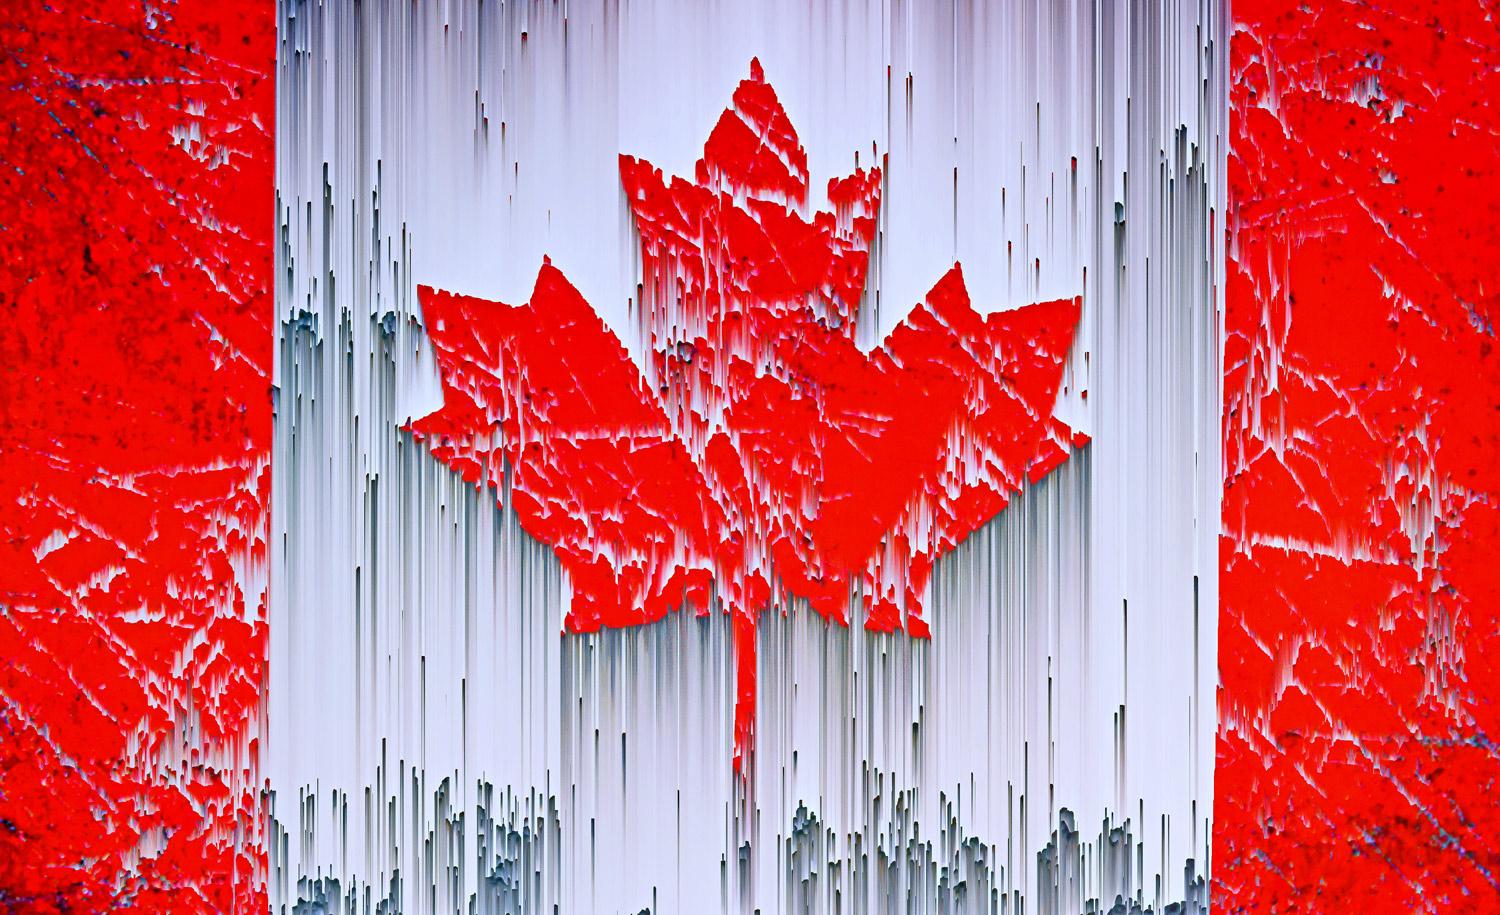 Interpretation der kanadischen Flagge, die die Vielfalt der Nation widerspiegelt

Das Kunstwerk wird auf hochwertigem Fotopapier gedruckt, auf eine Aluminium-Dibond-Platte geklebt und mit Acrylglas abgedeckt.  (Museumsqualität) 

Jochens Arbeiten